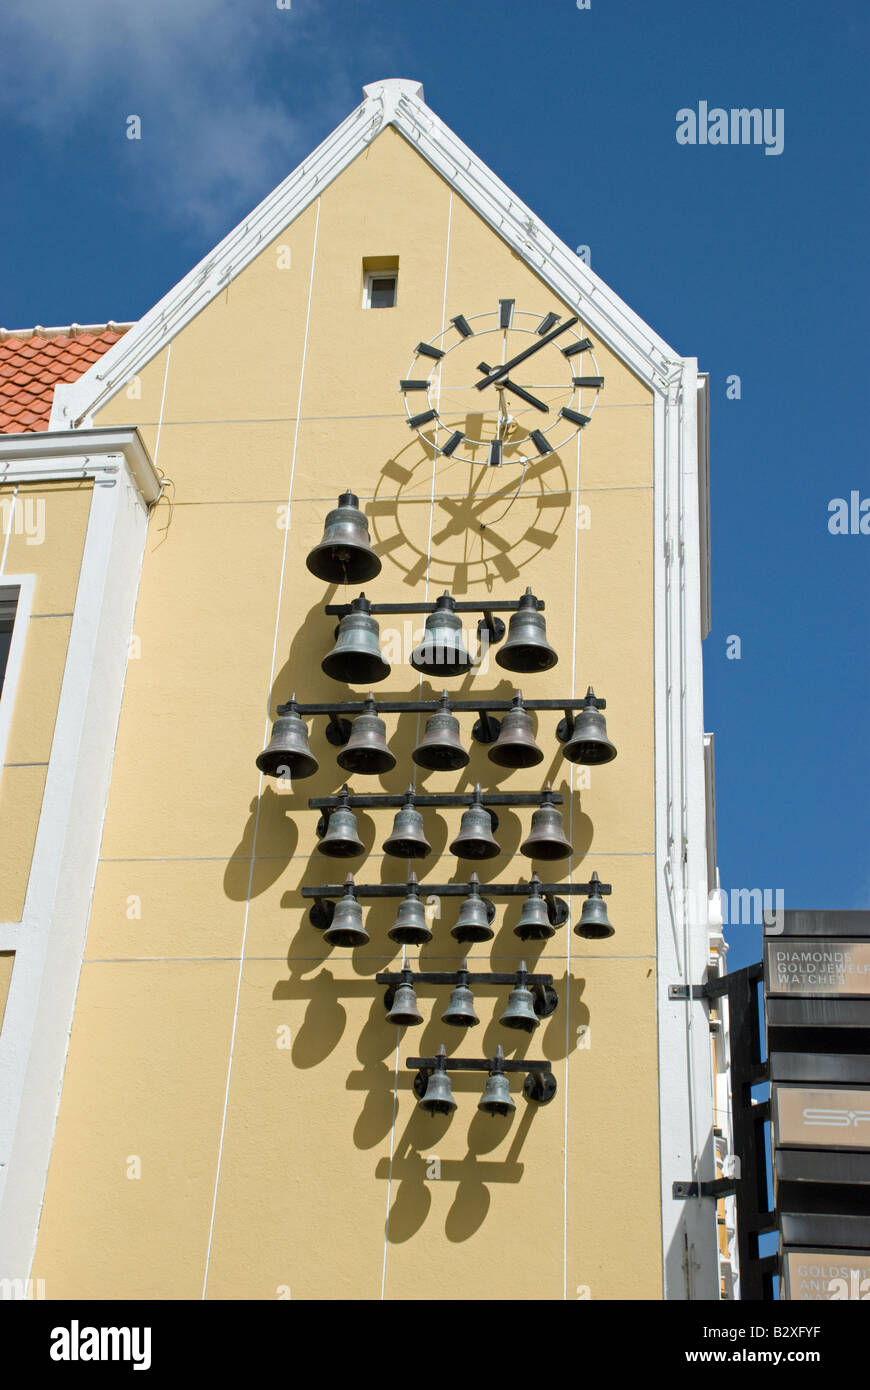 Wanduhr mit Glocken läuten. Willemstad, Curacao, Niederländische Antillen. Stockfoto